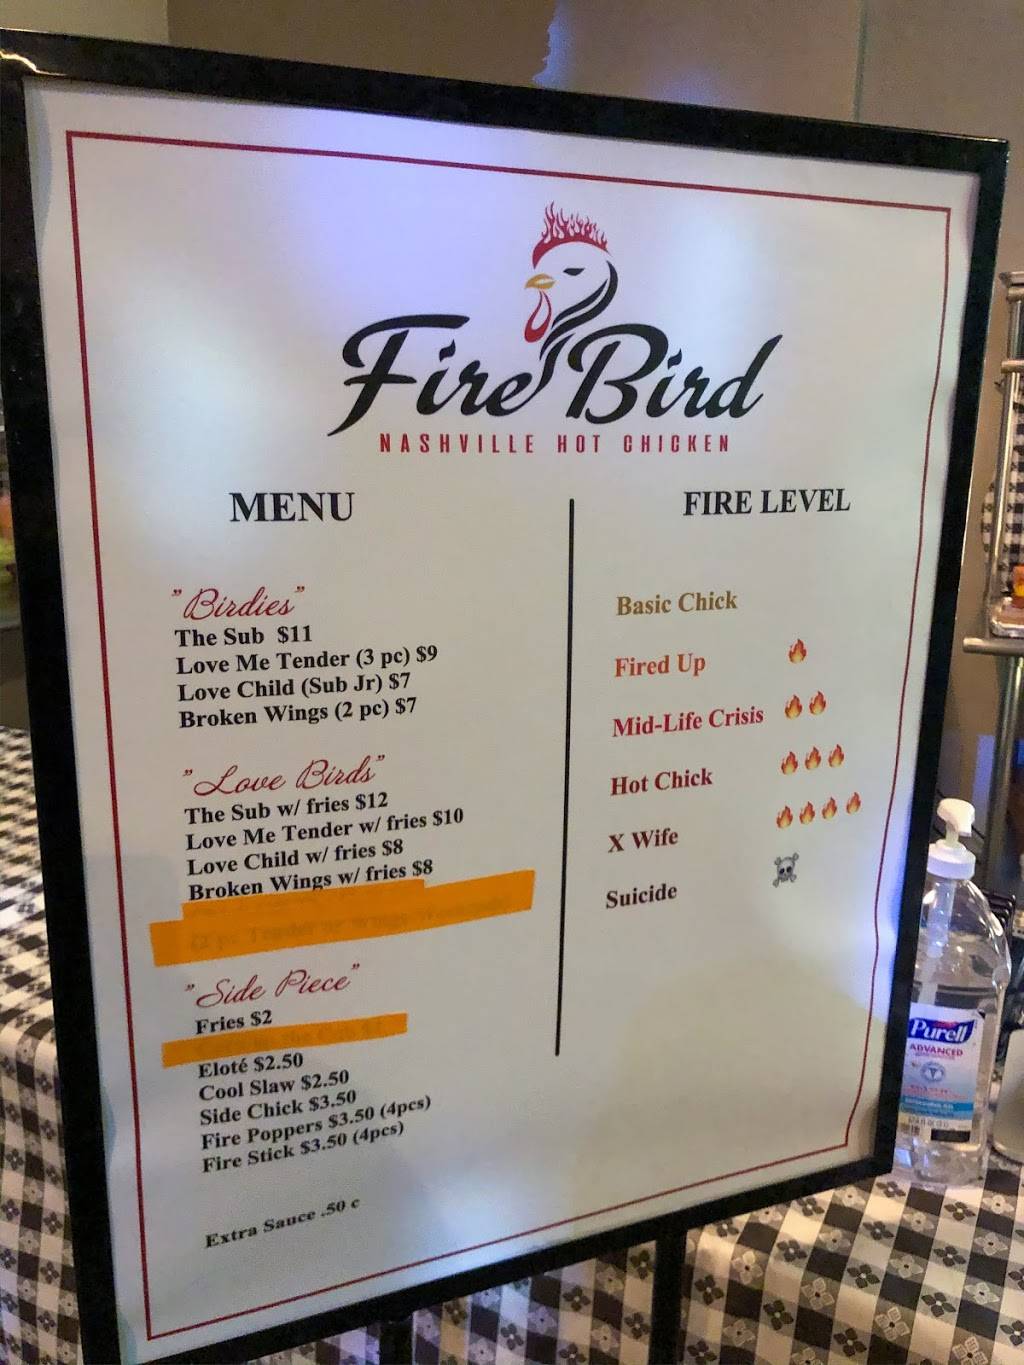 Firebird Nashville Hot Chicken | ONLINE ORDER ONLY, 3630 Atlantic Ave, Long Beach, CA 90807 | Phone: (562) 543-3911